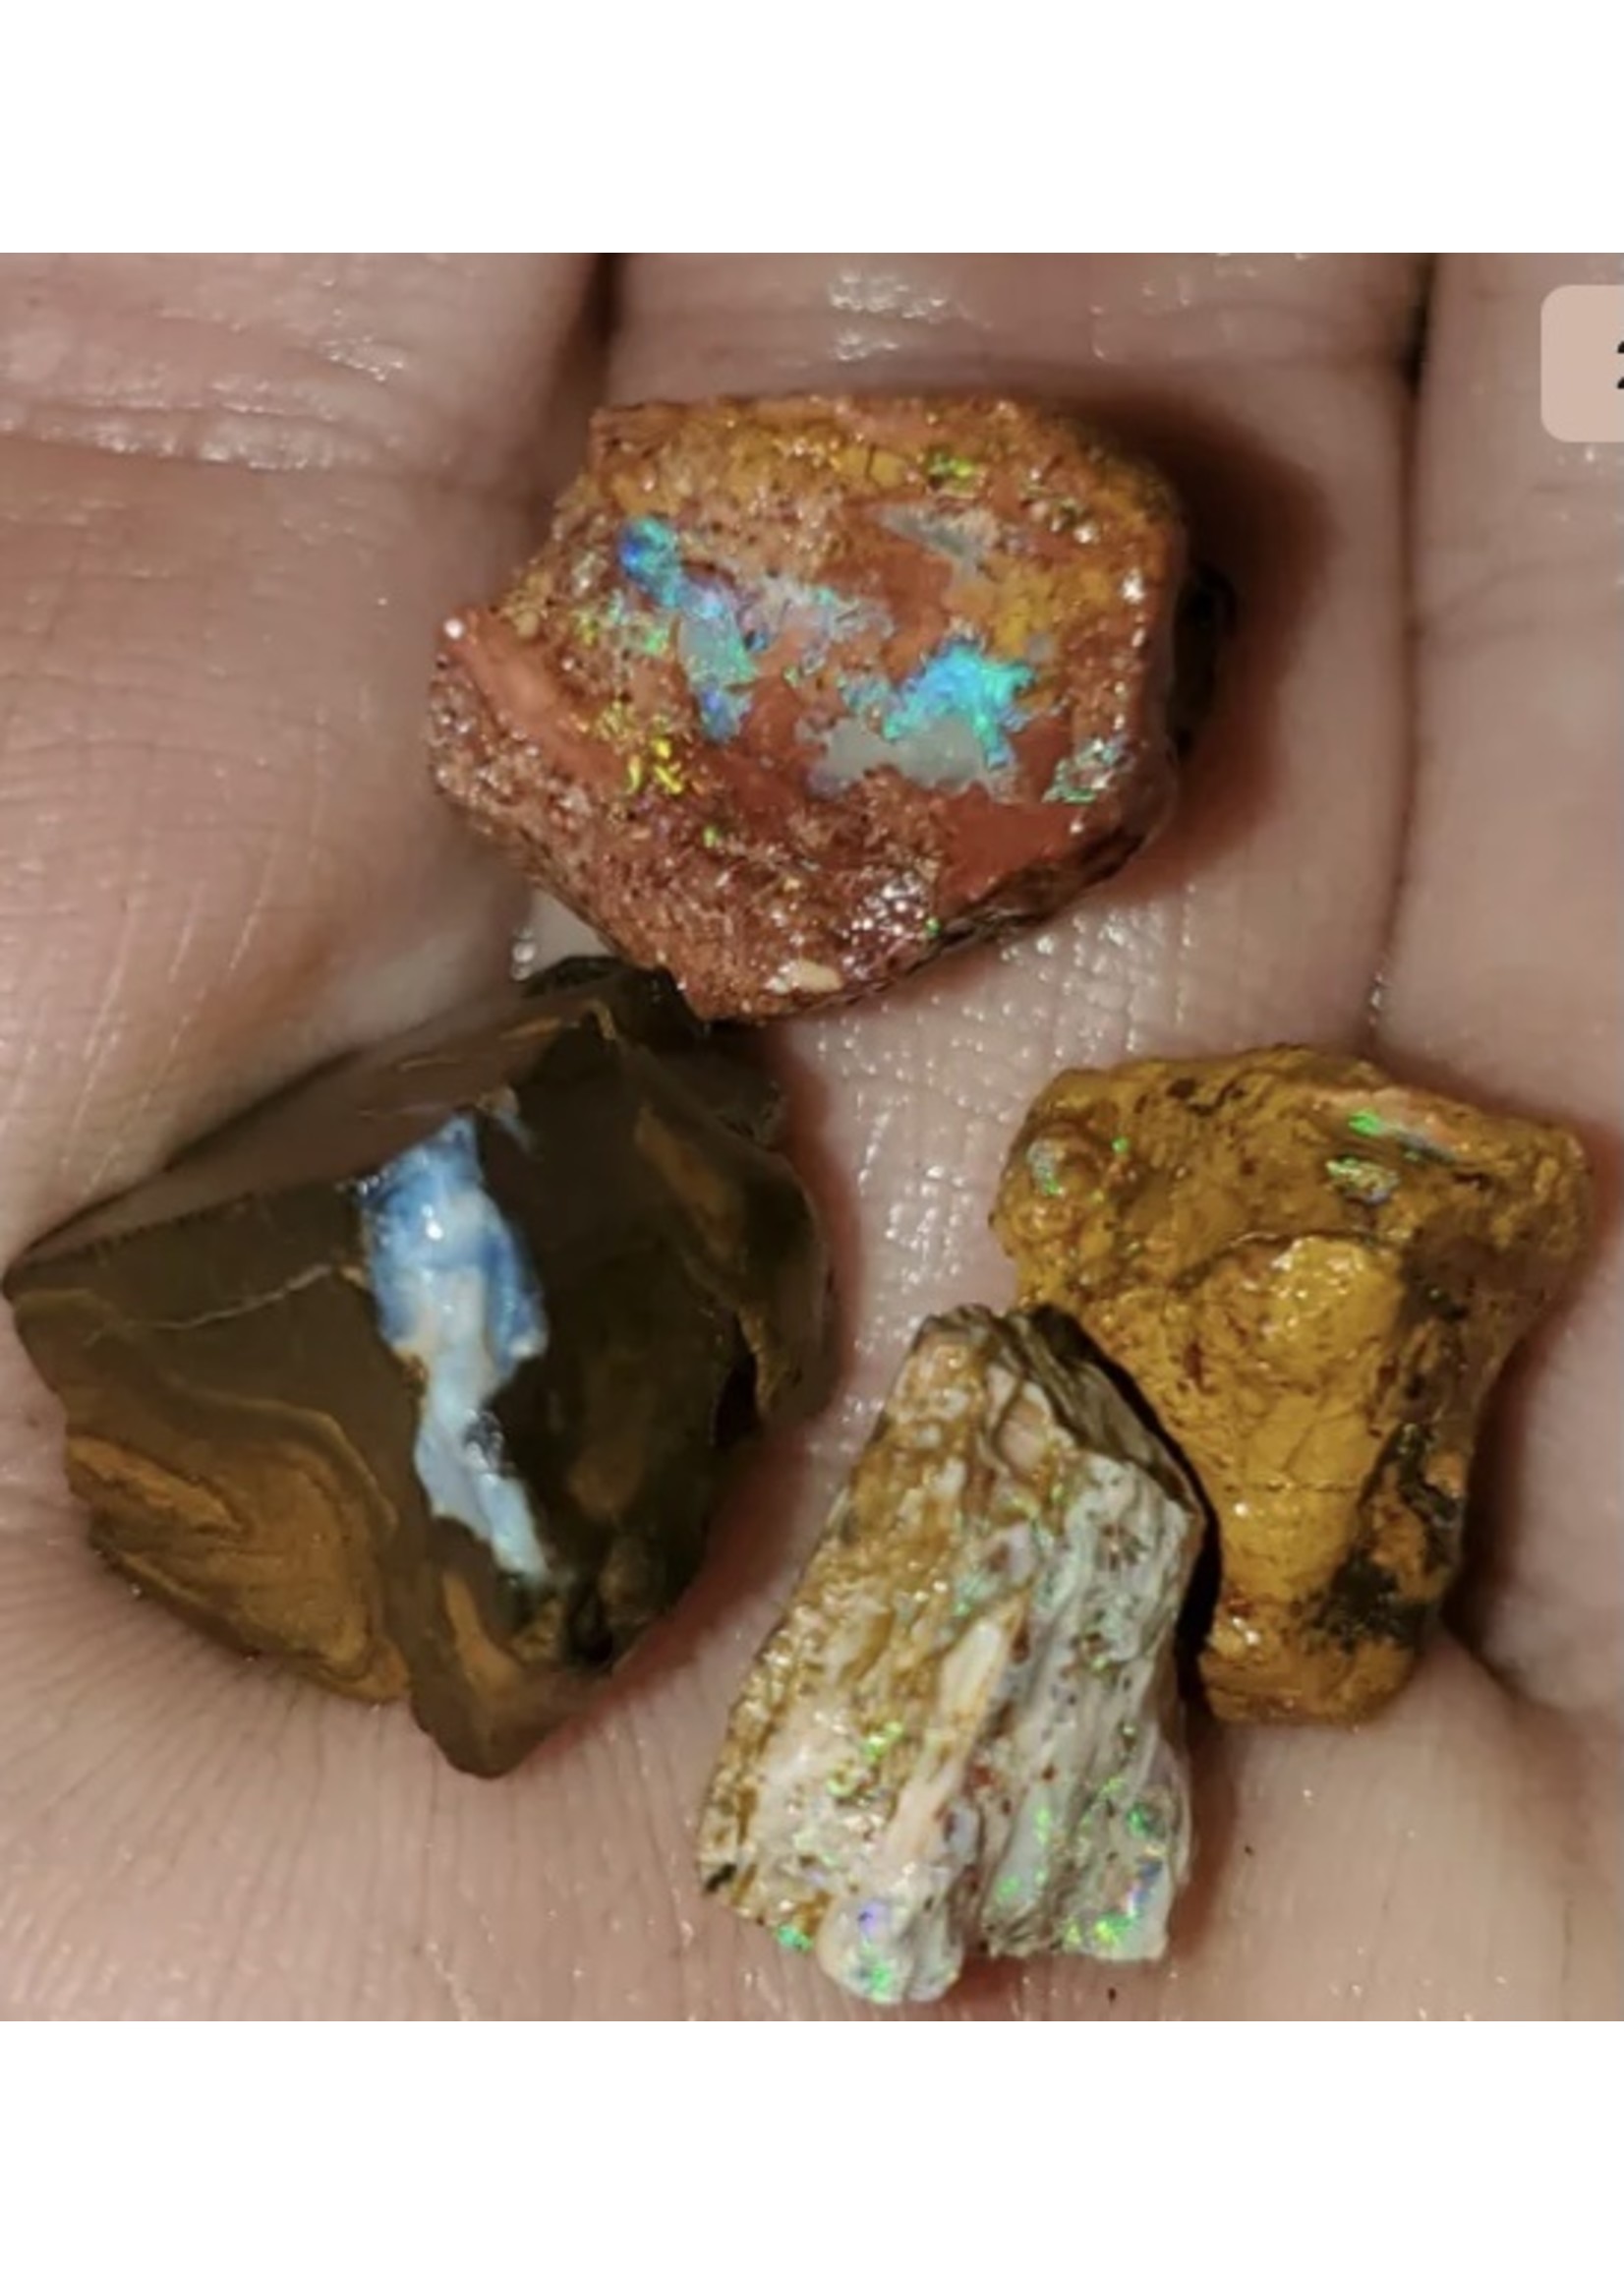 39.1 ct Australian mixed boulder opal lot